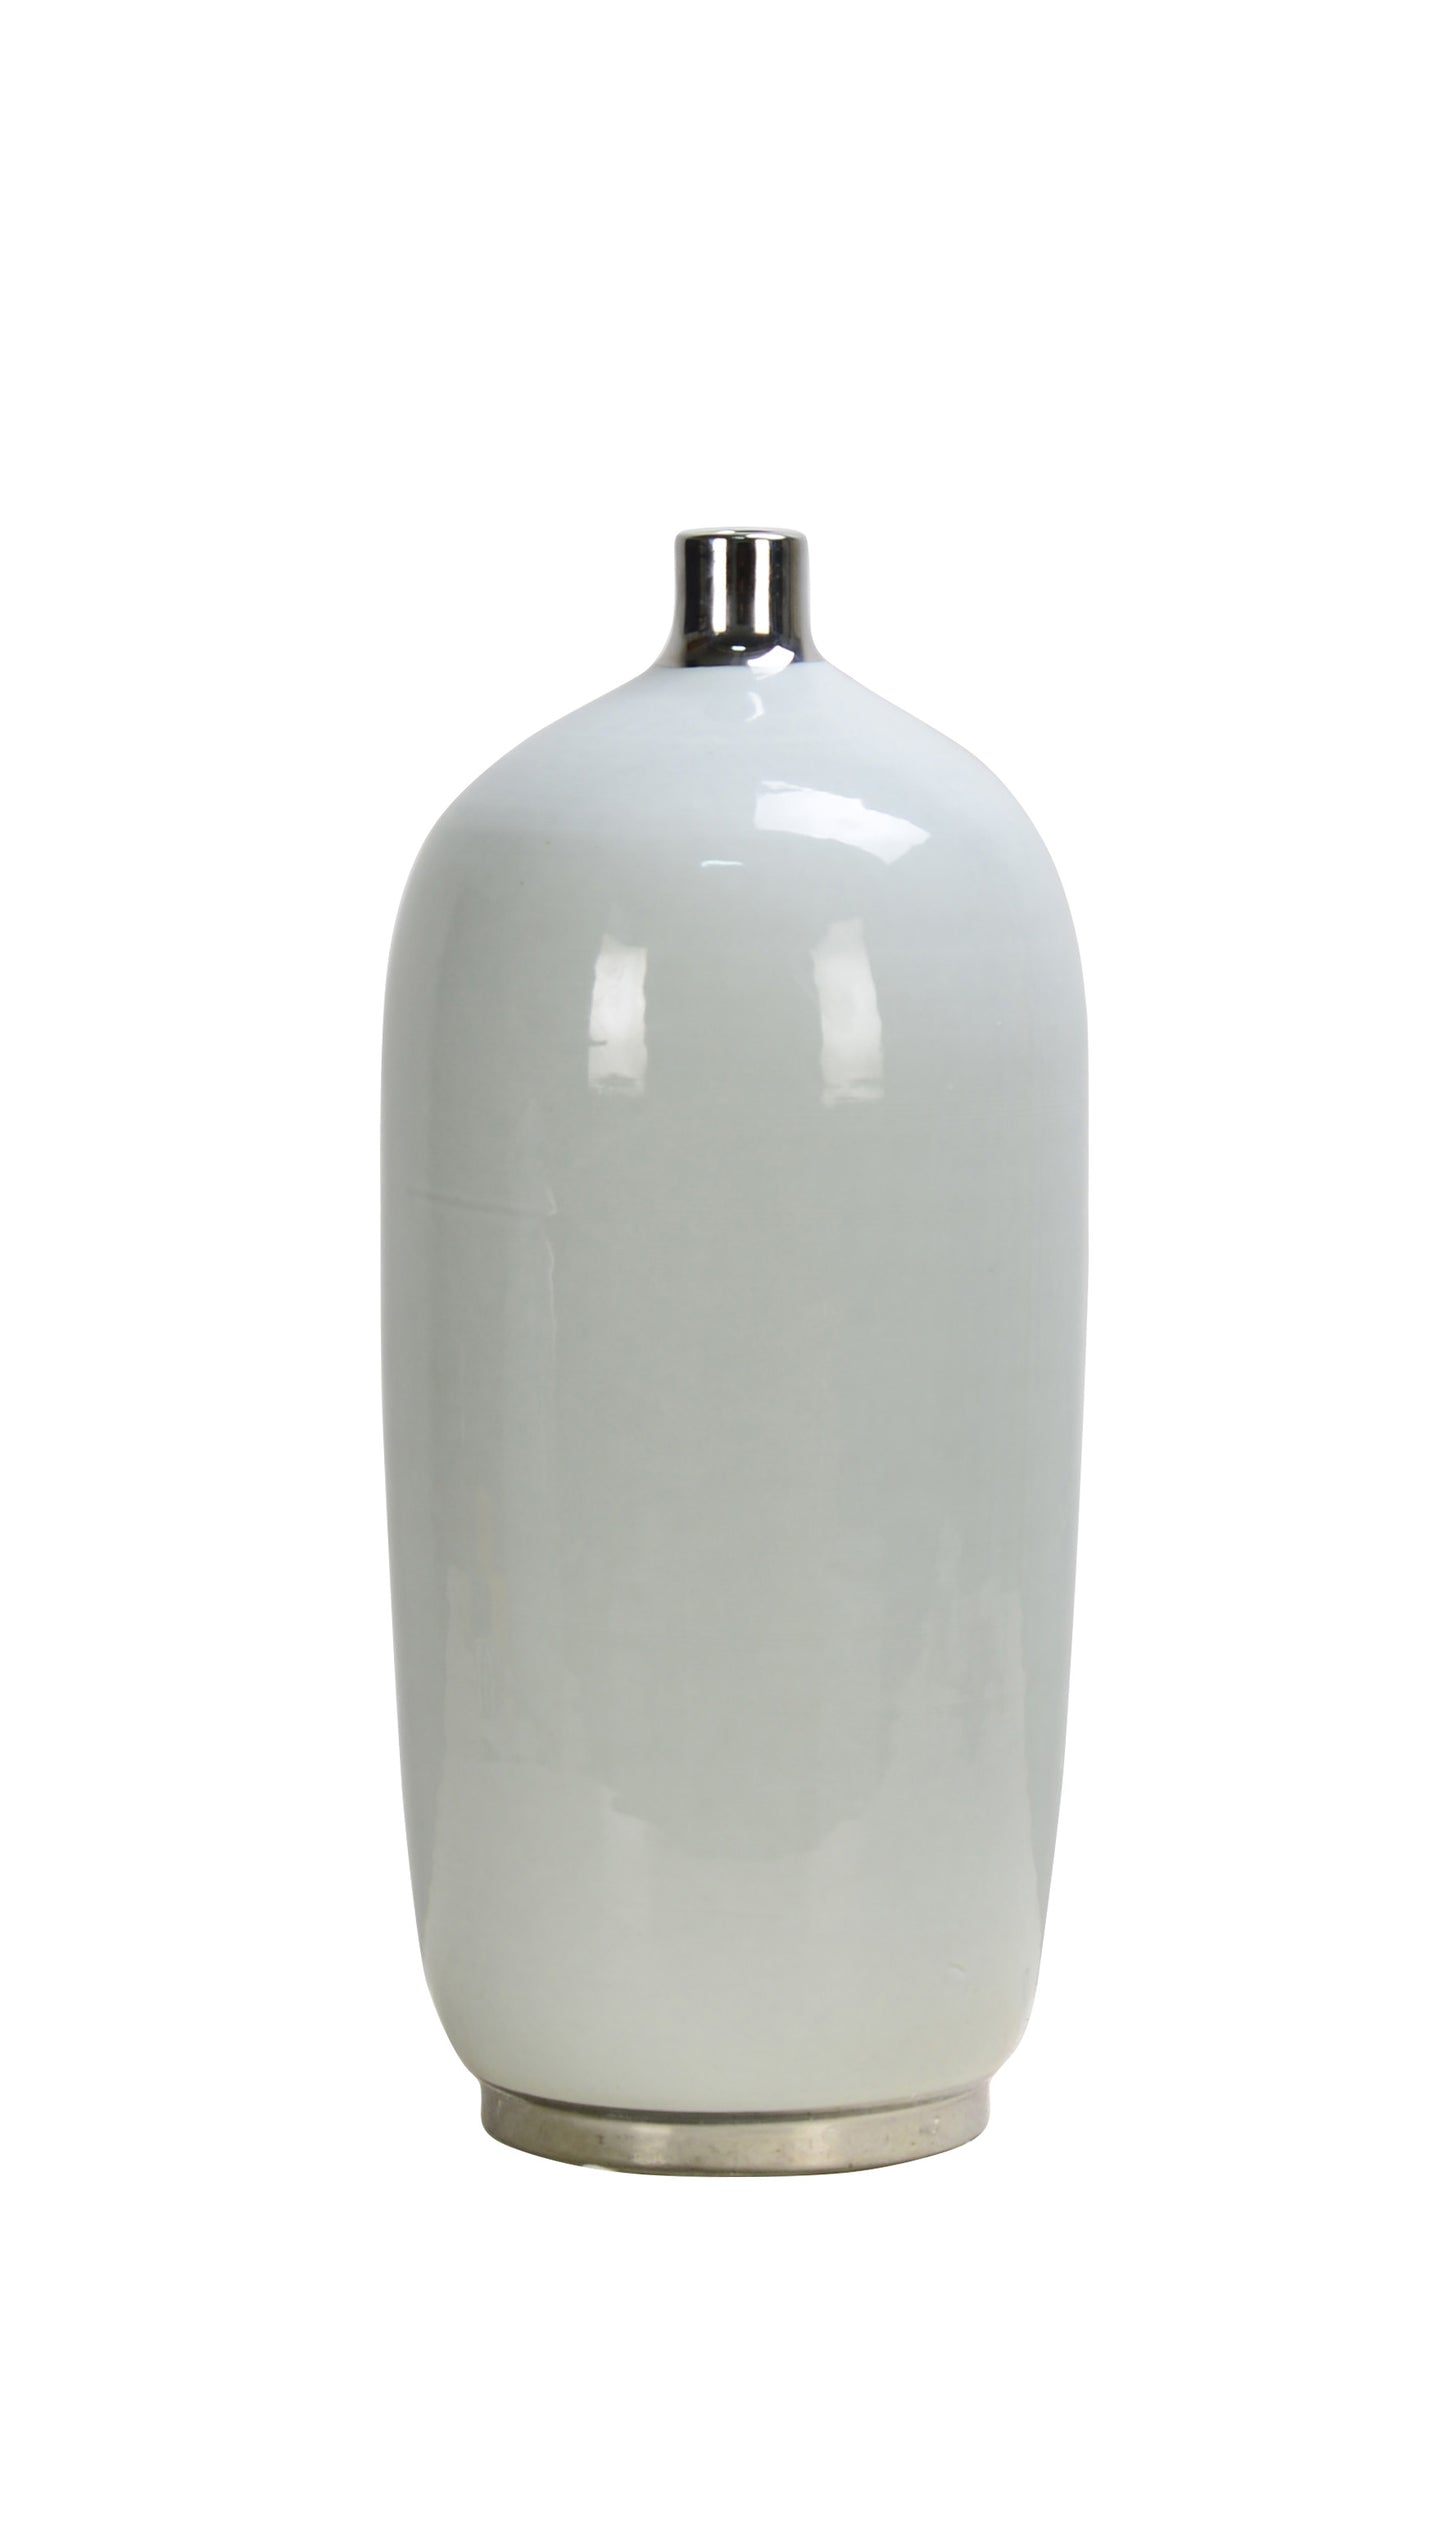 Glossy Silver Trim Ceramic Vase - 40cm